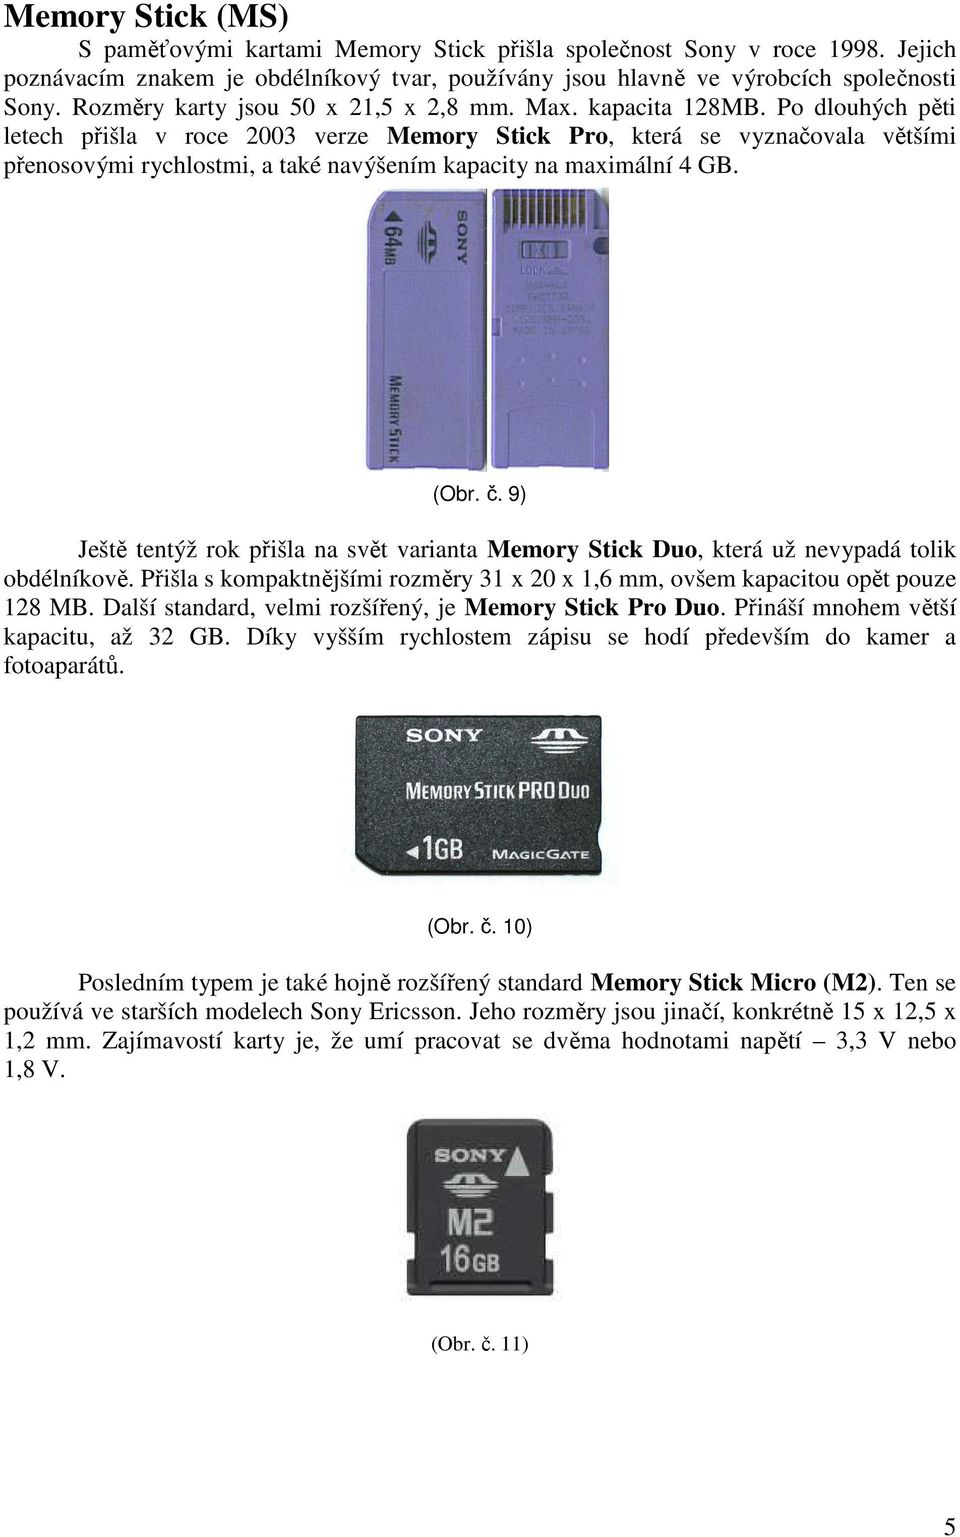 Po dlouhých pěti letech přišla v roce 2003 verze Memory Stick Pro, která se vyznačovala většími přenosovými rychlostmi, a také navýšením kapacity na maximální 4 GB. (Obr. č.